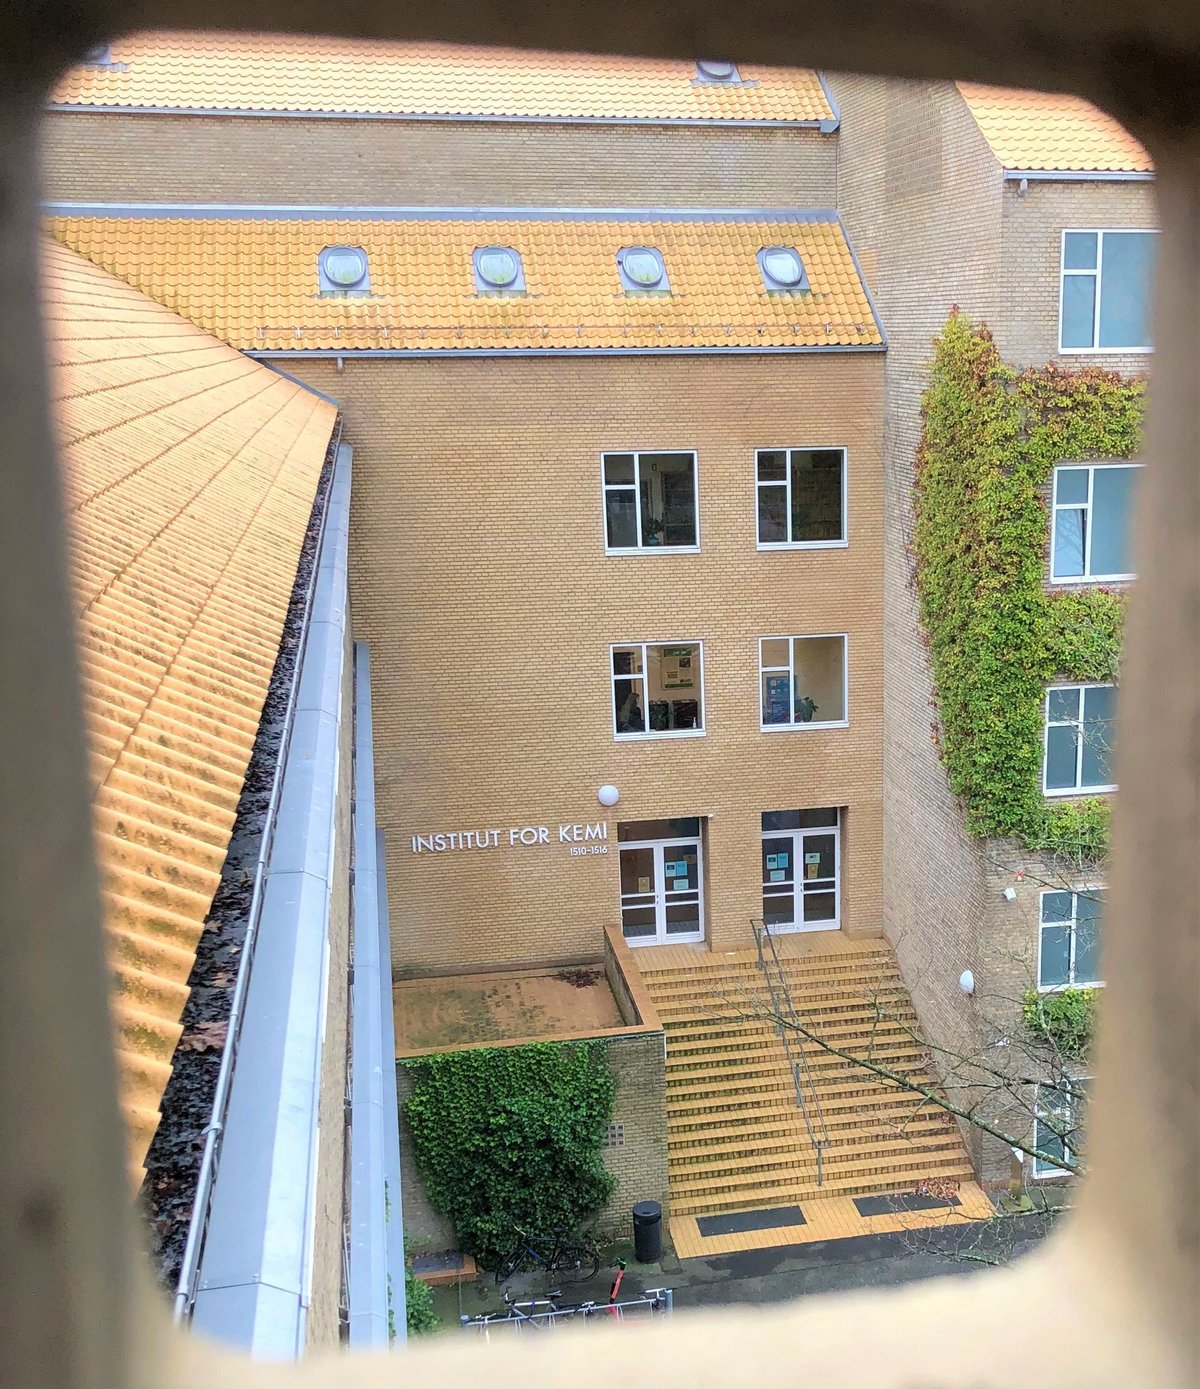 Instituttets hovedindgang set fra udluftningen under loftet i modsatte bygning.